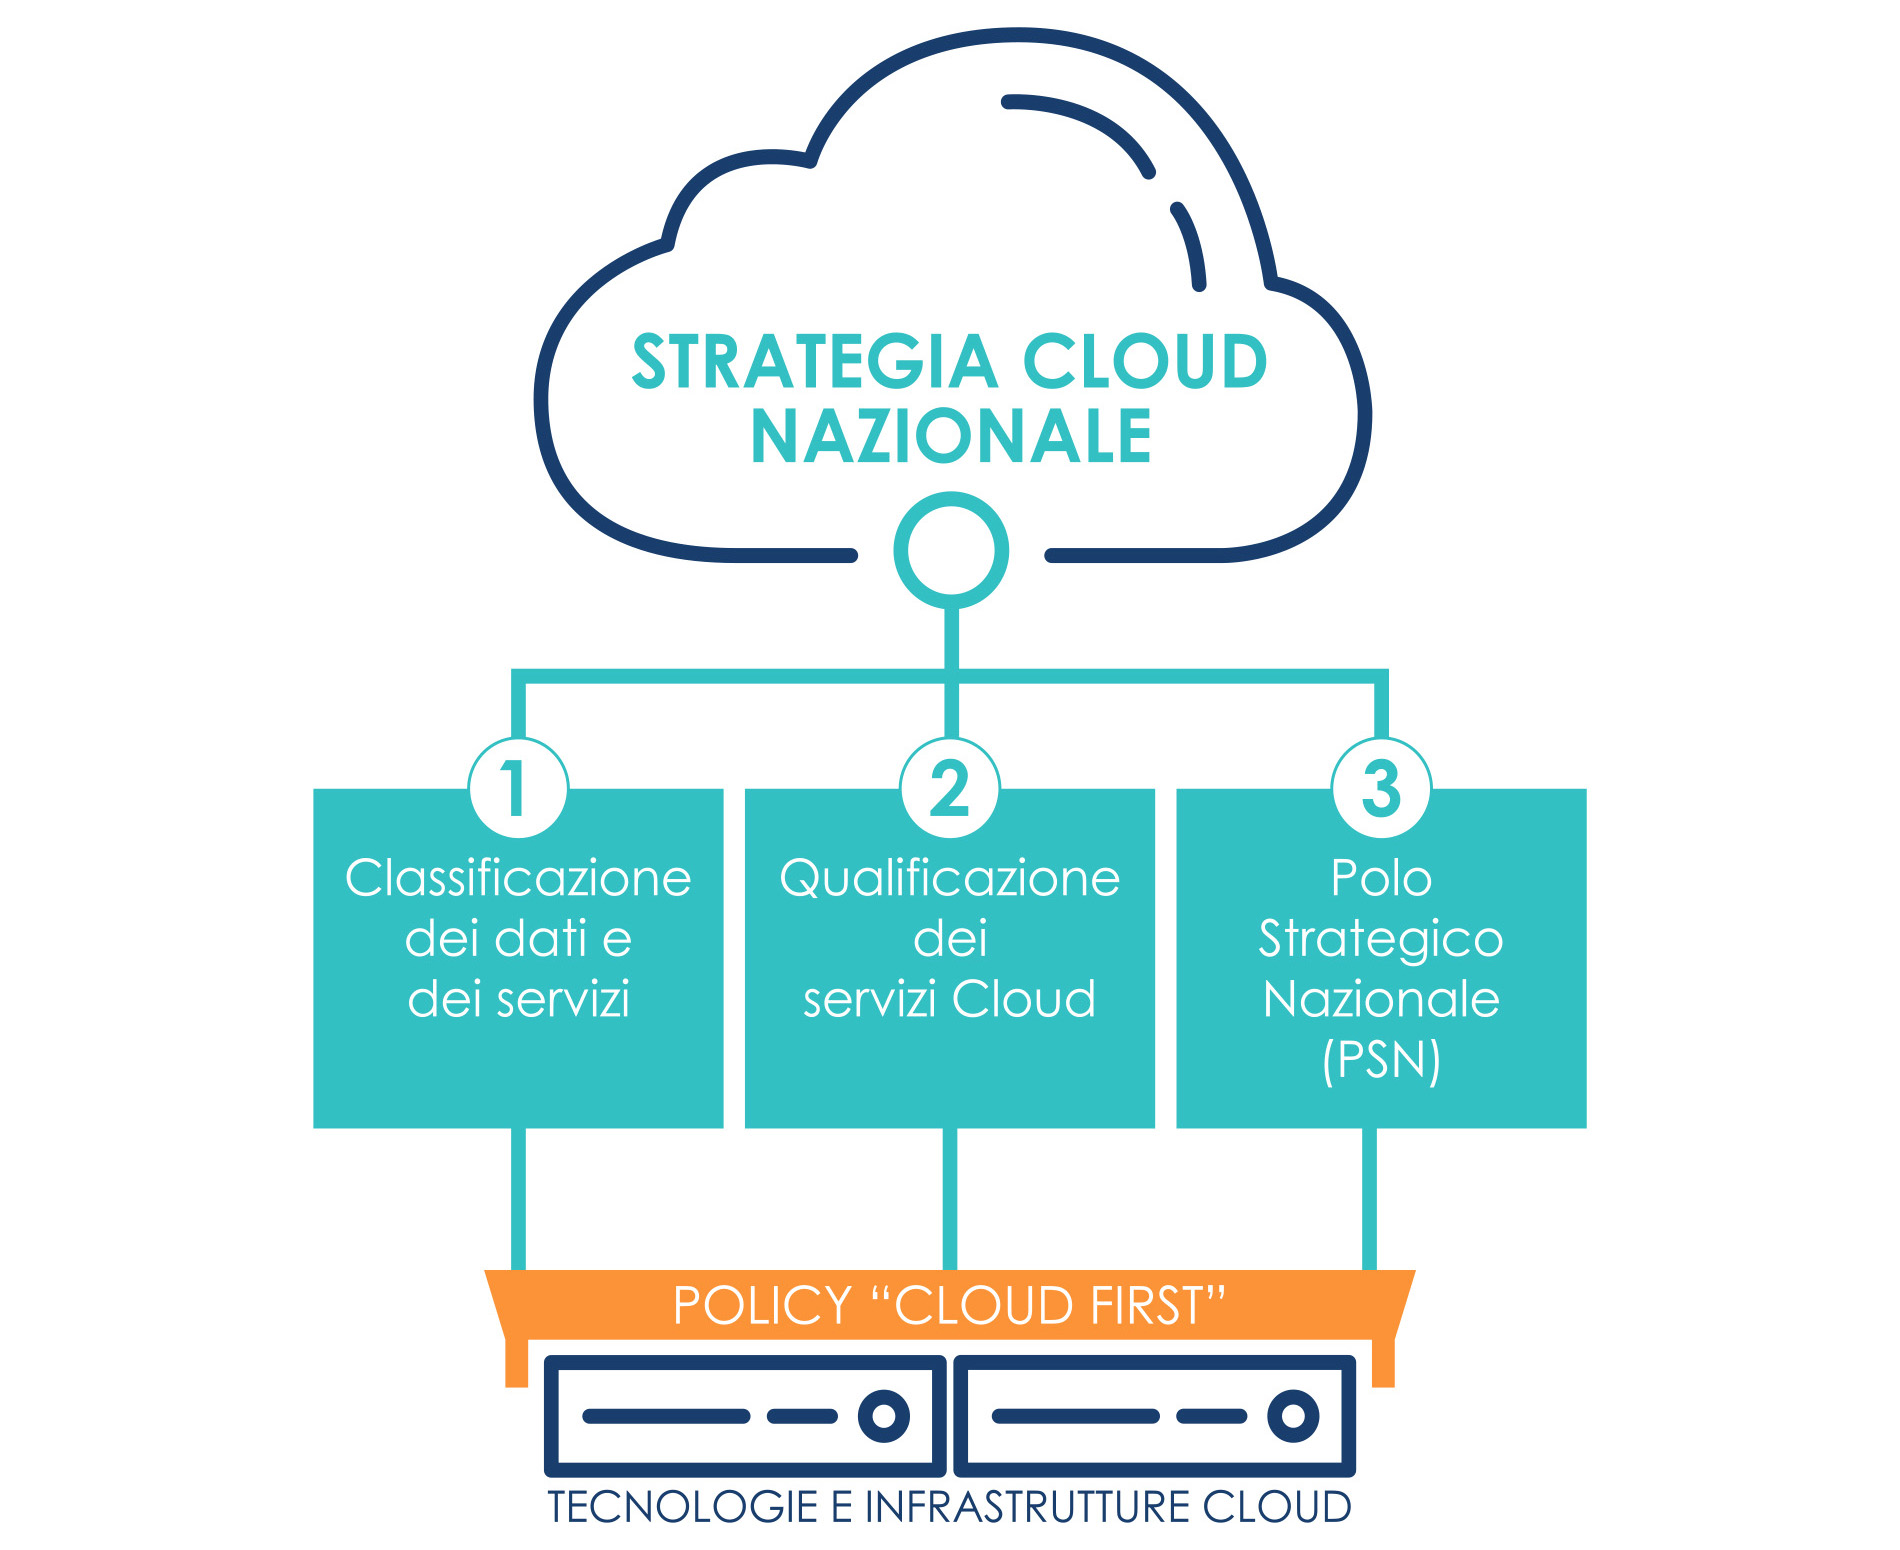 Immagine che mostra le tre linee che delineano la strategia cloud nazionale.